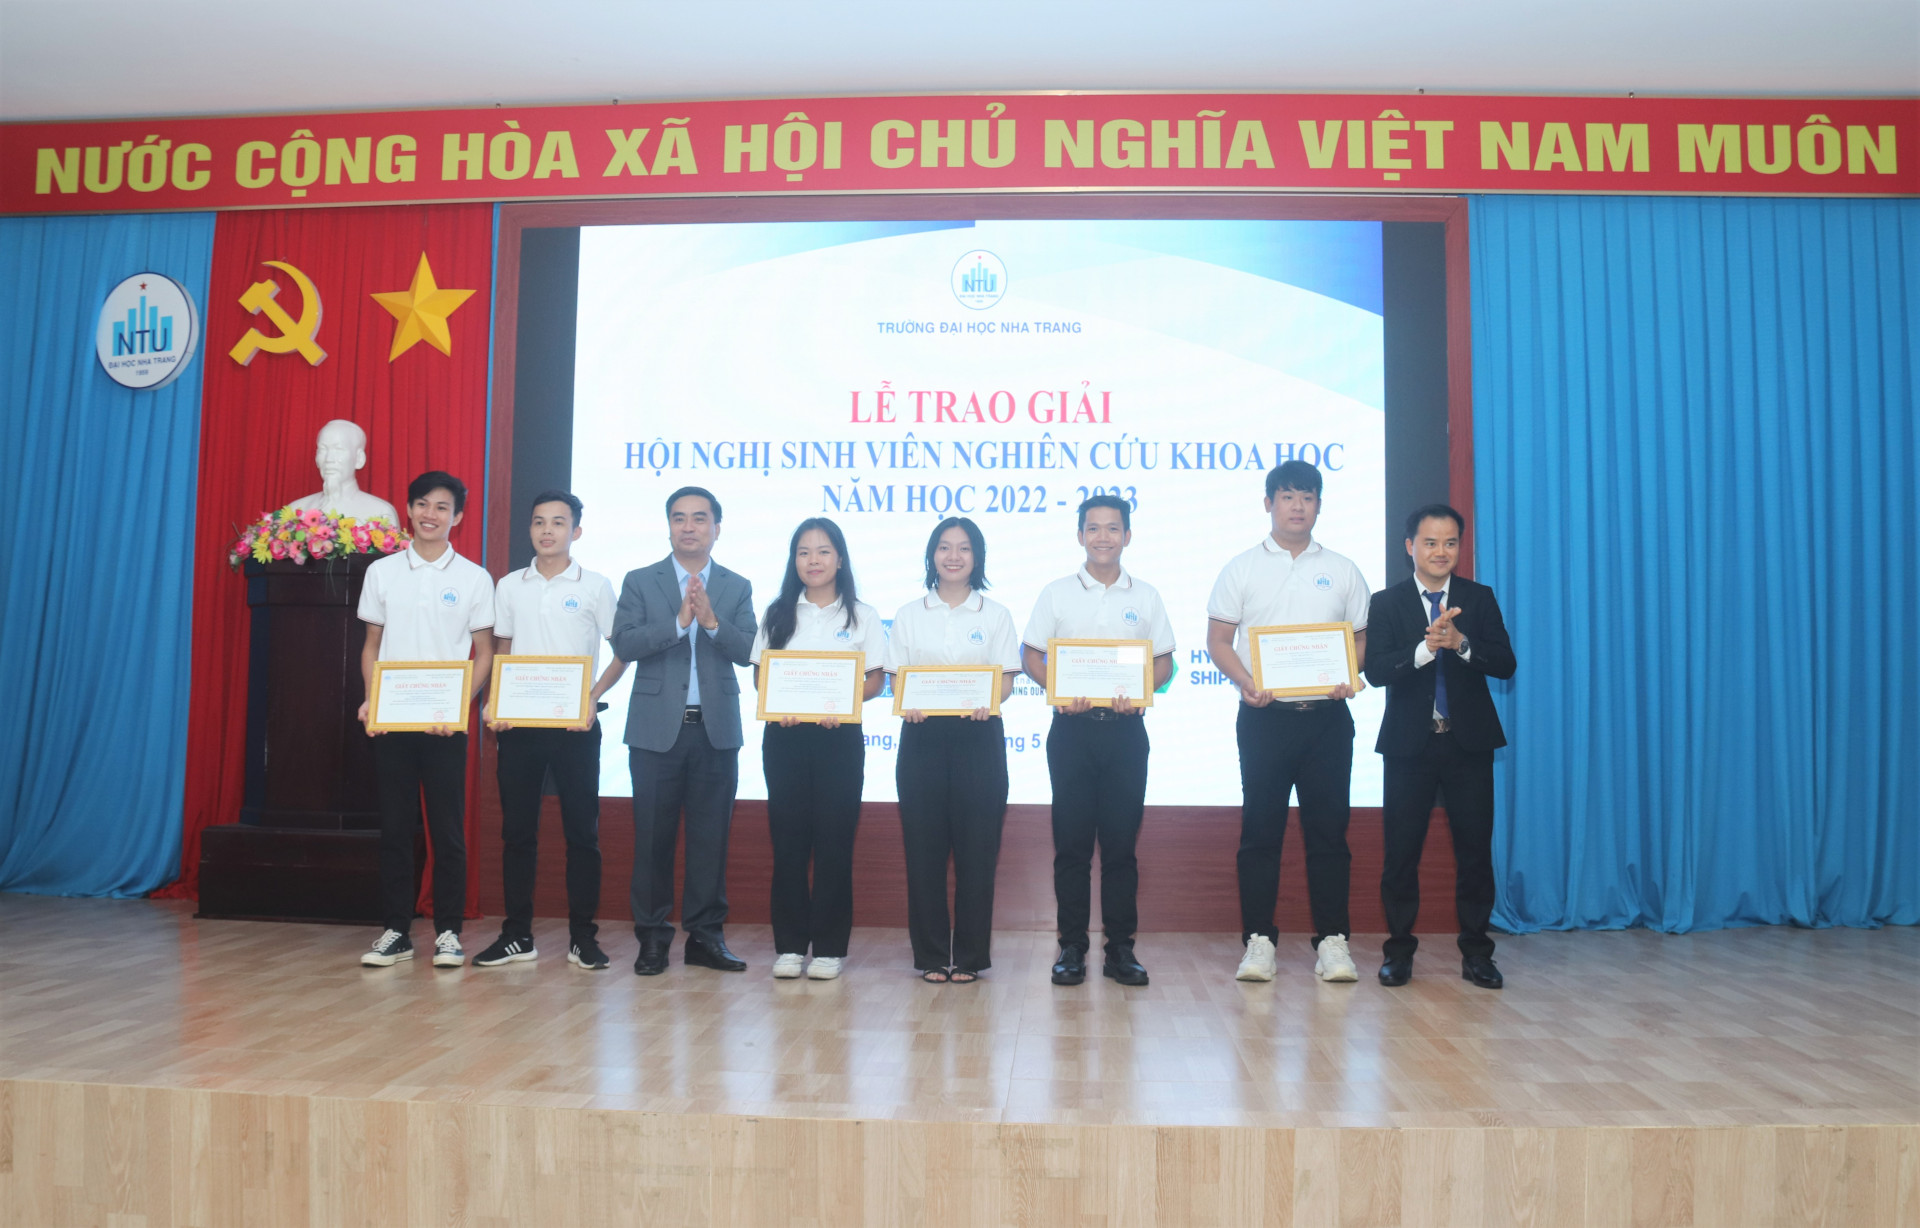 Phó Giáo sư, Tiến sĩ Phạm Quốc Hùng - Phó Hiệu trưởng Trường Đại học Nha Trang cùng đại diện nhà tài trợ trao giải cho các nhóm sinh viên cùng đạt giải nhất. 